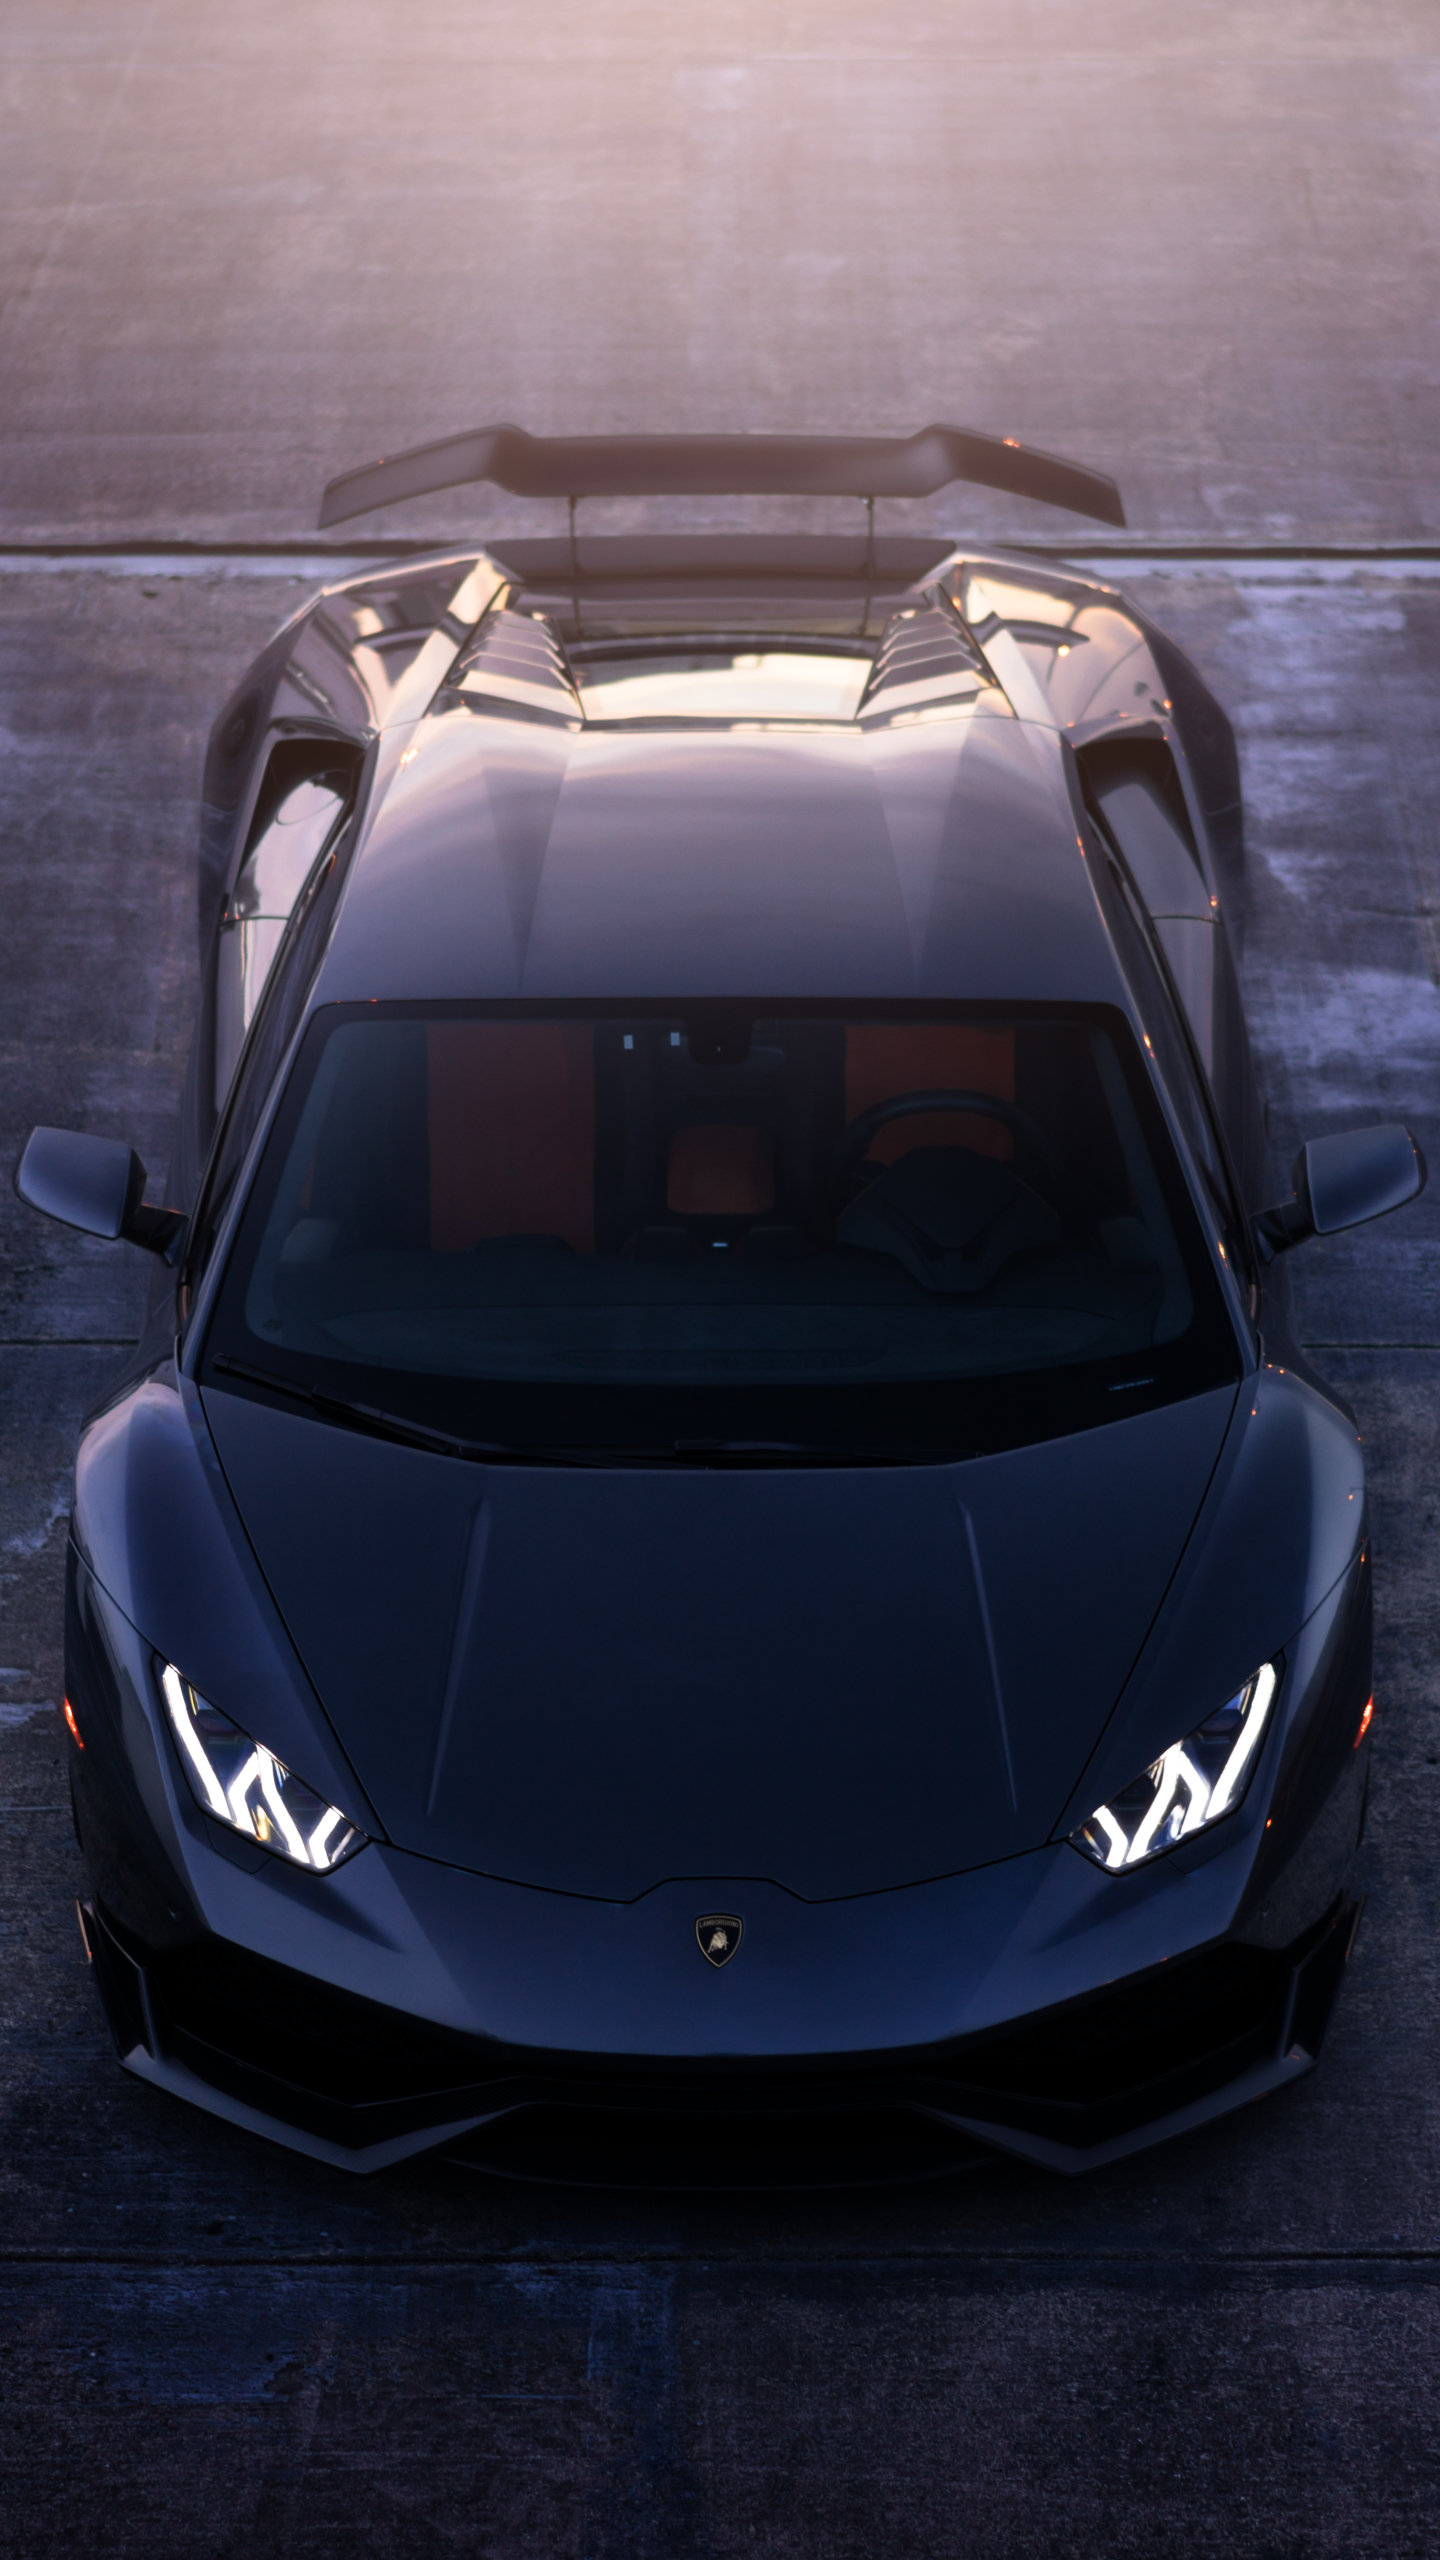 Descarga gratuita de fondo de pantalla para móvil de Lamborghini, Lamborghini Huracán, Vehículos.